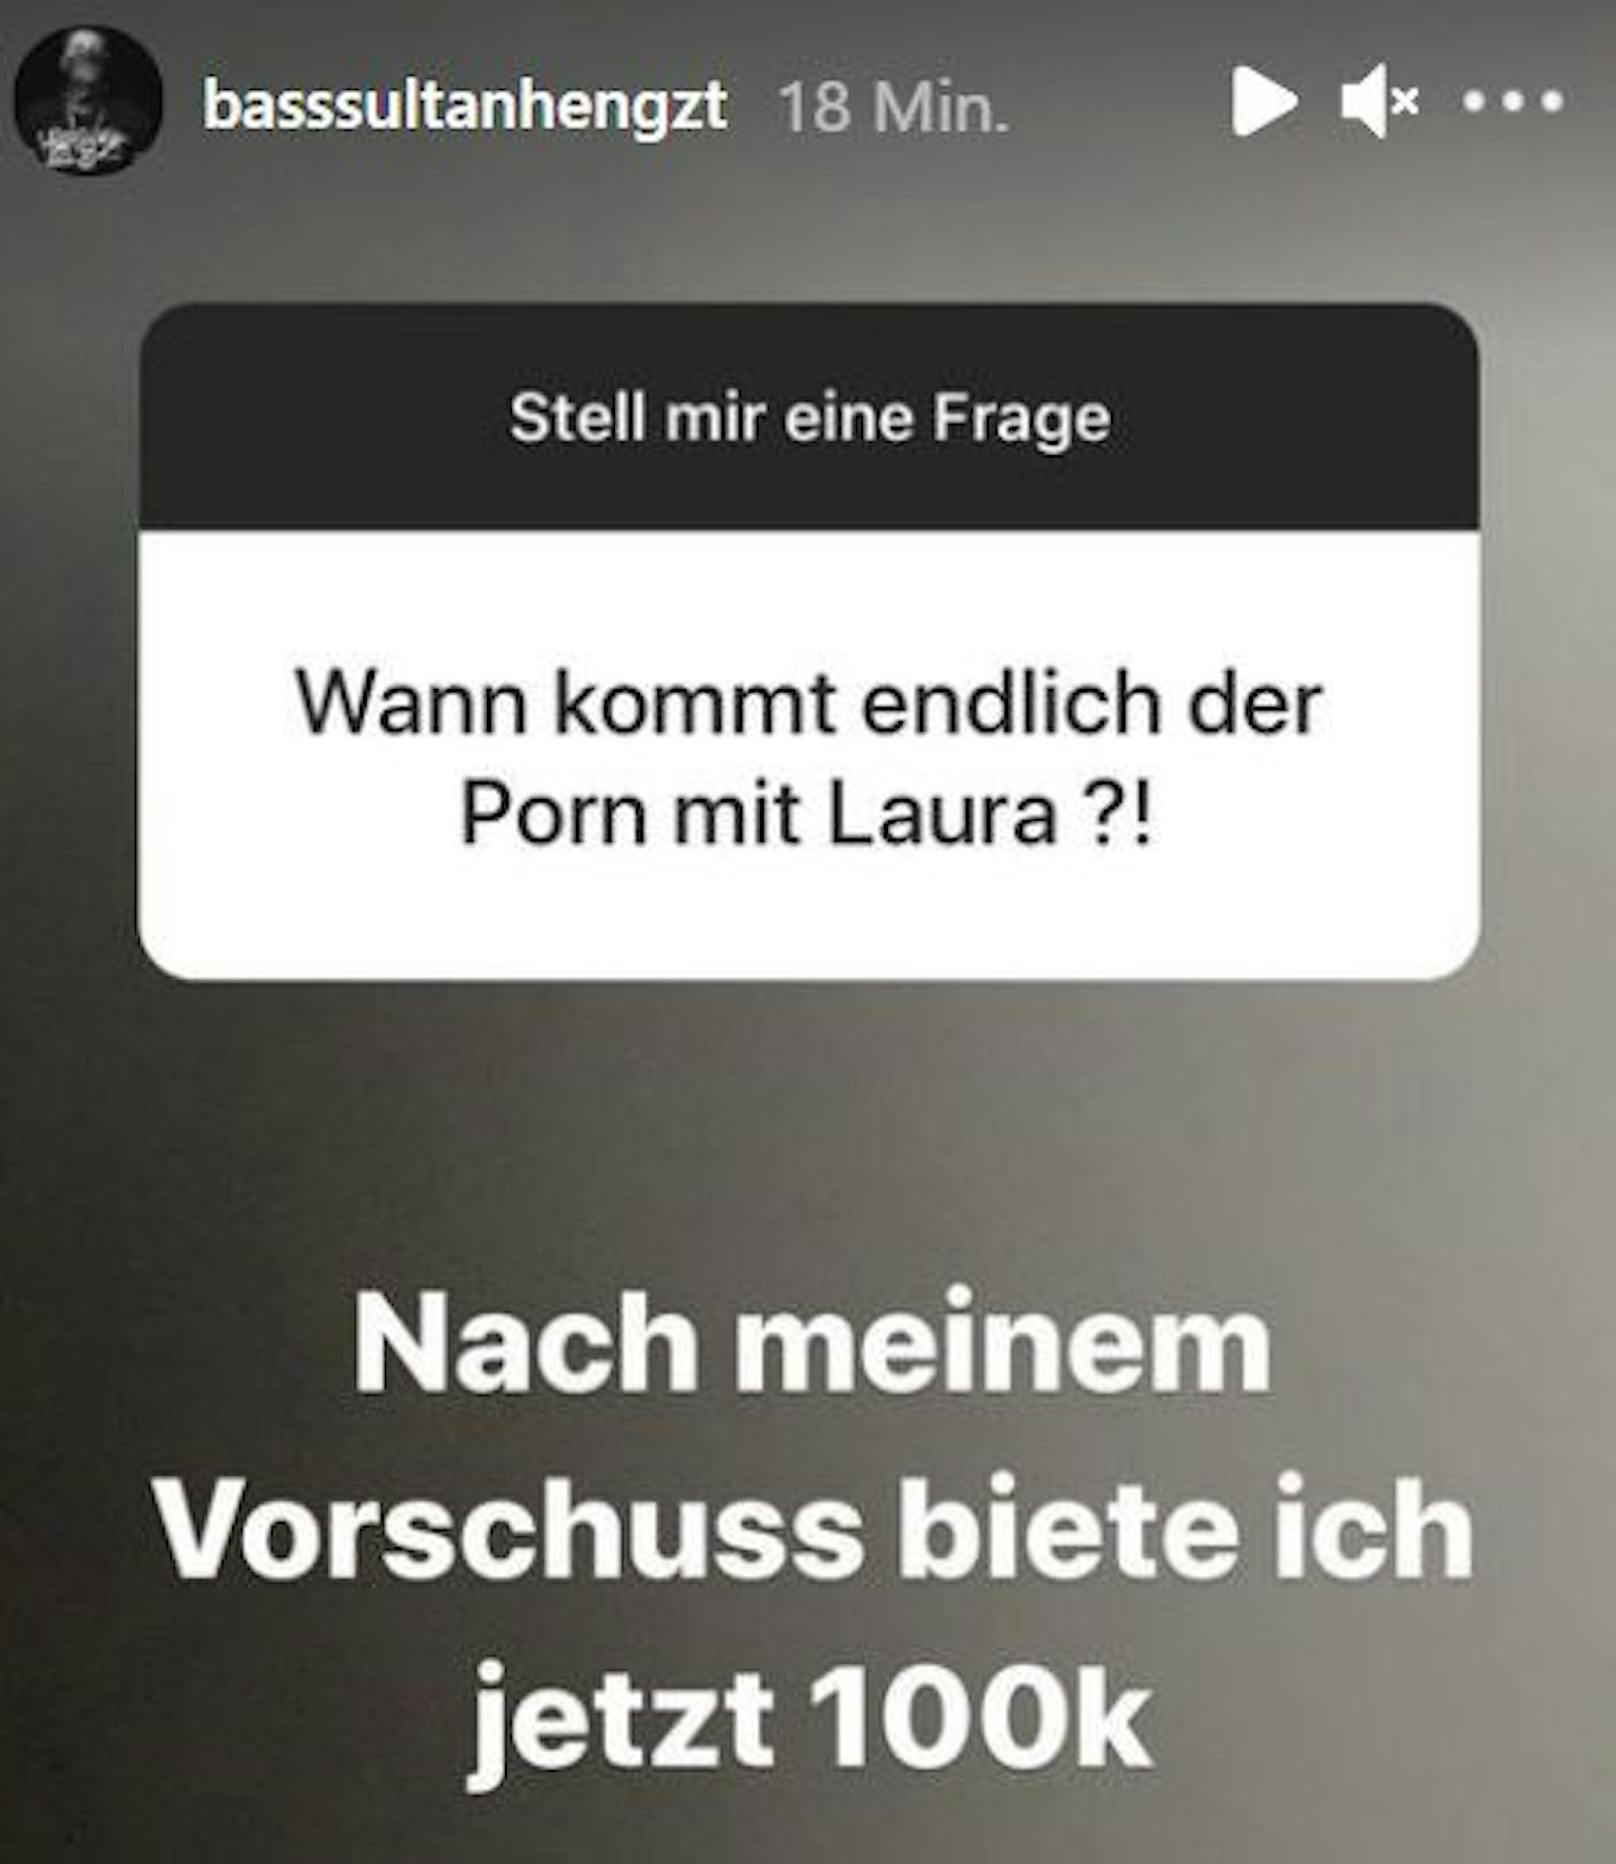 Bass Sultan Hengzt und sein Porno-Angebot für Laura Müller